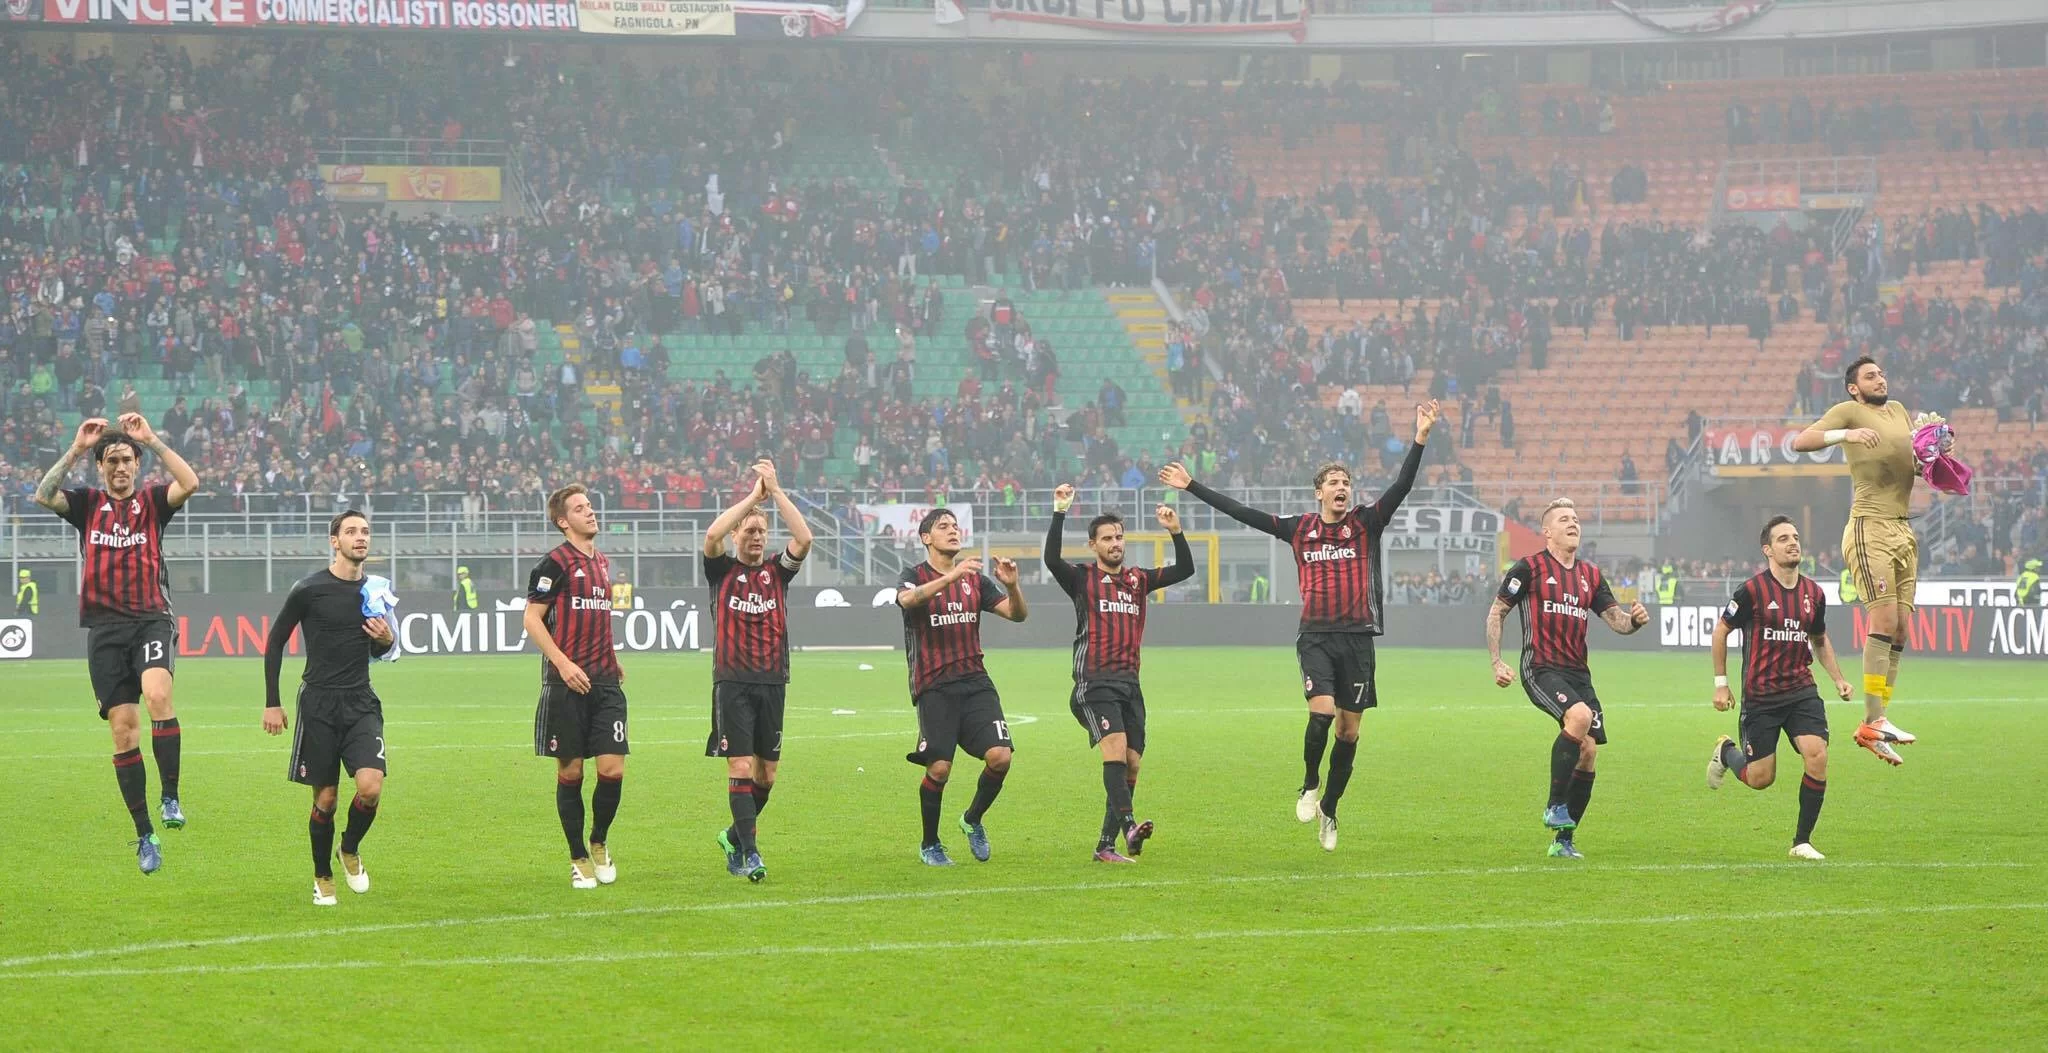 GaSport: Milan, battere la Sampdoria per riprendere il cammino verso l’Europa